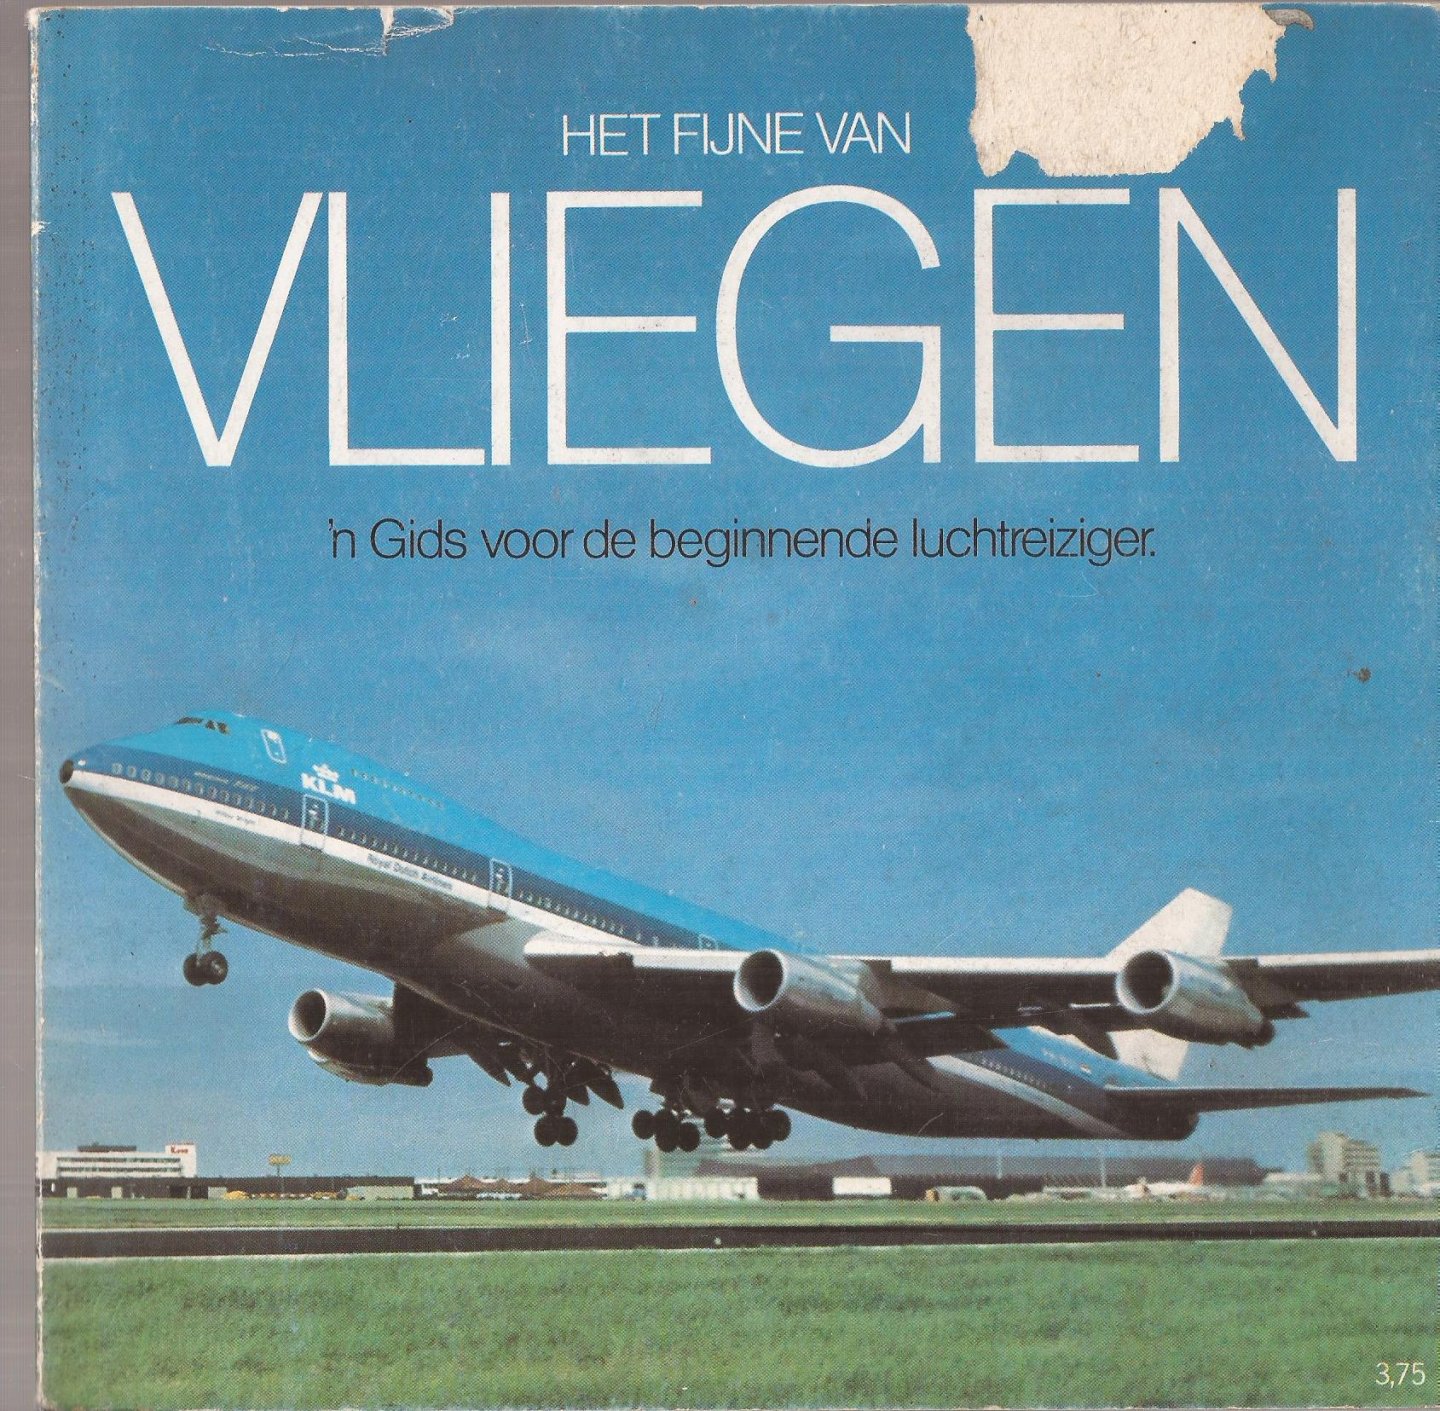 KLM Koninklijke Luchtvaart Maatschappij - Het fijne van vliegen. 'n Gids voor de beginnende luchtreiziger.